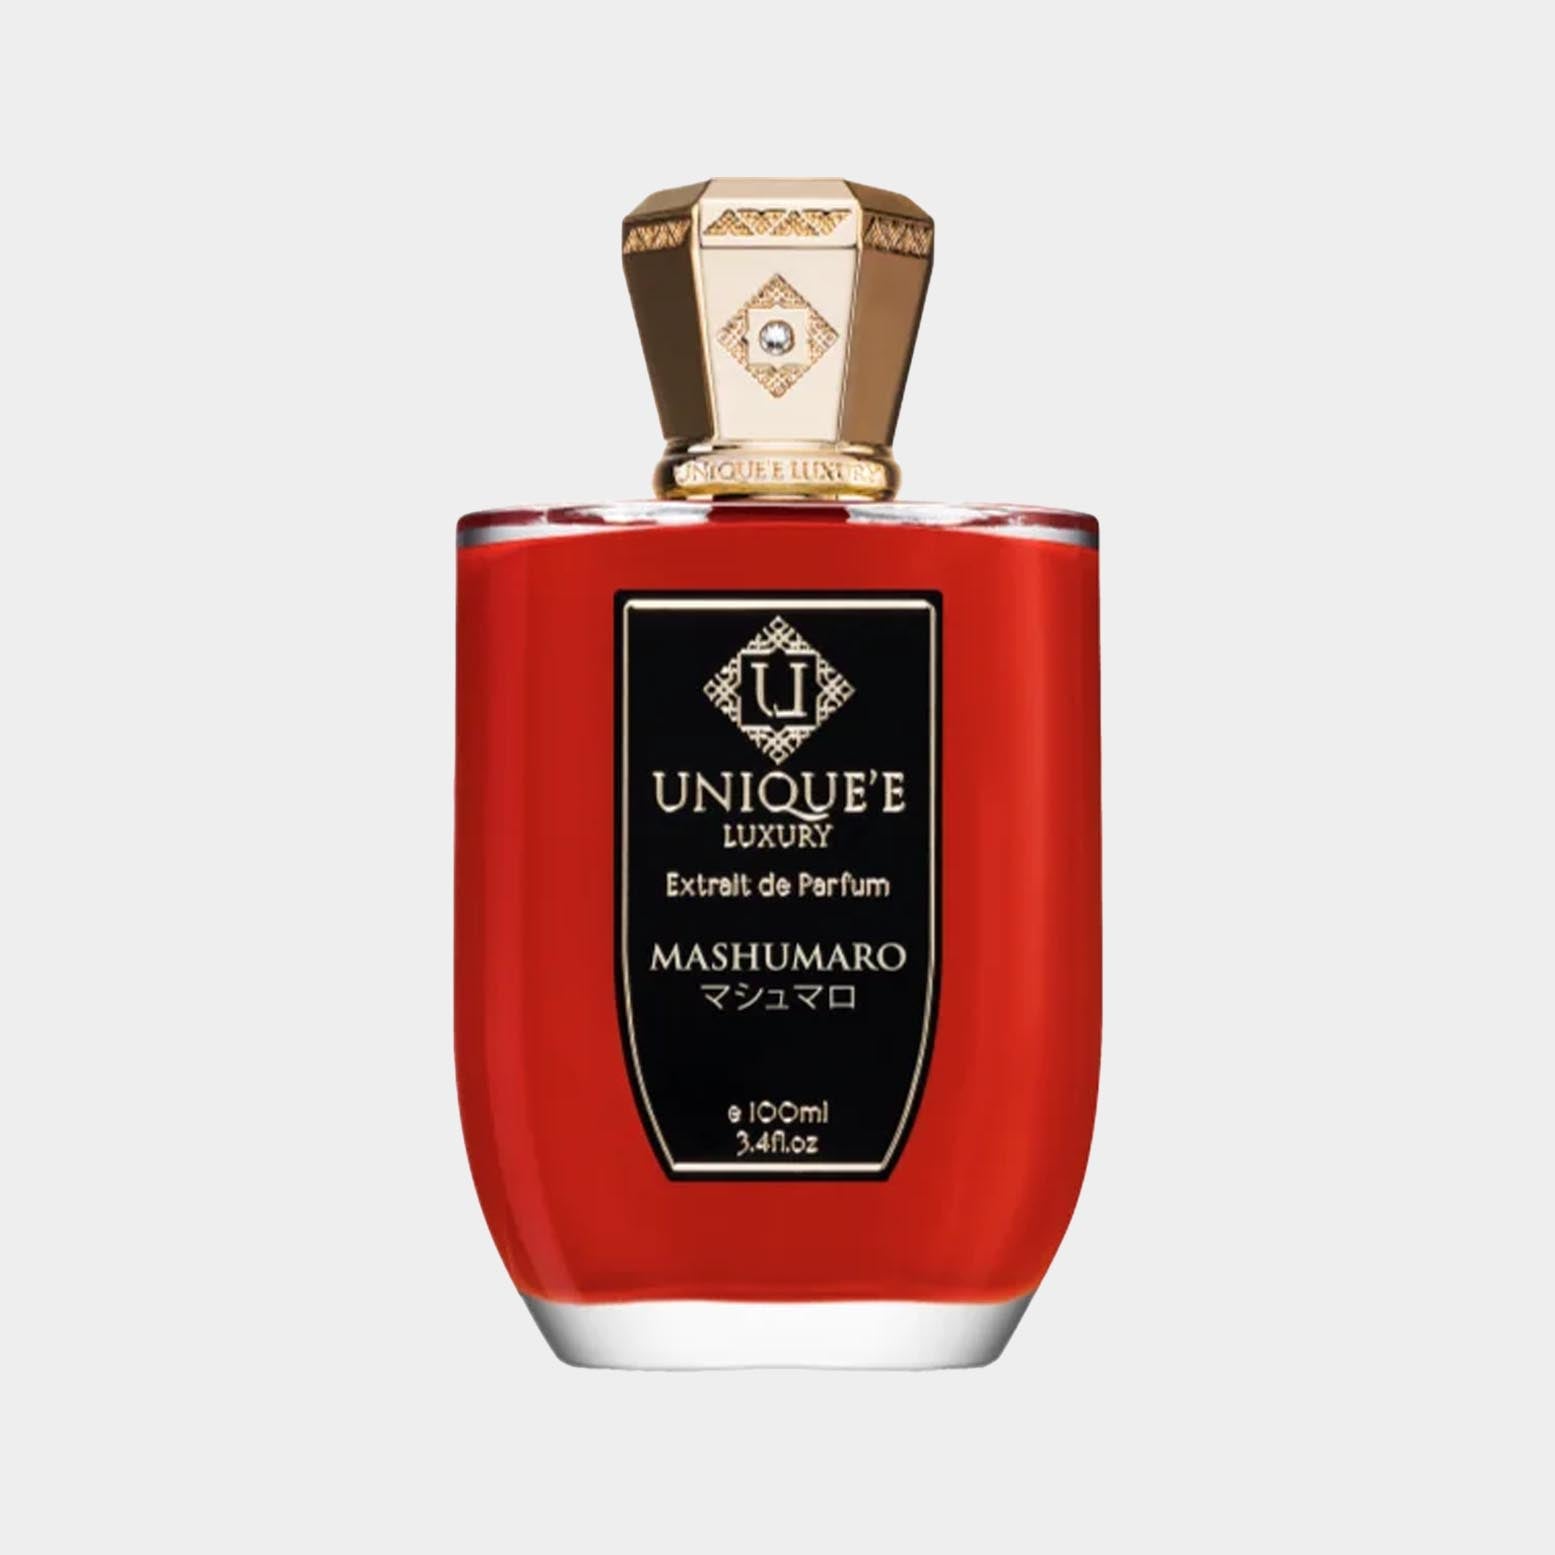 De parfum Unique'e Luxury Mashumaro.